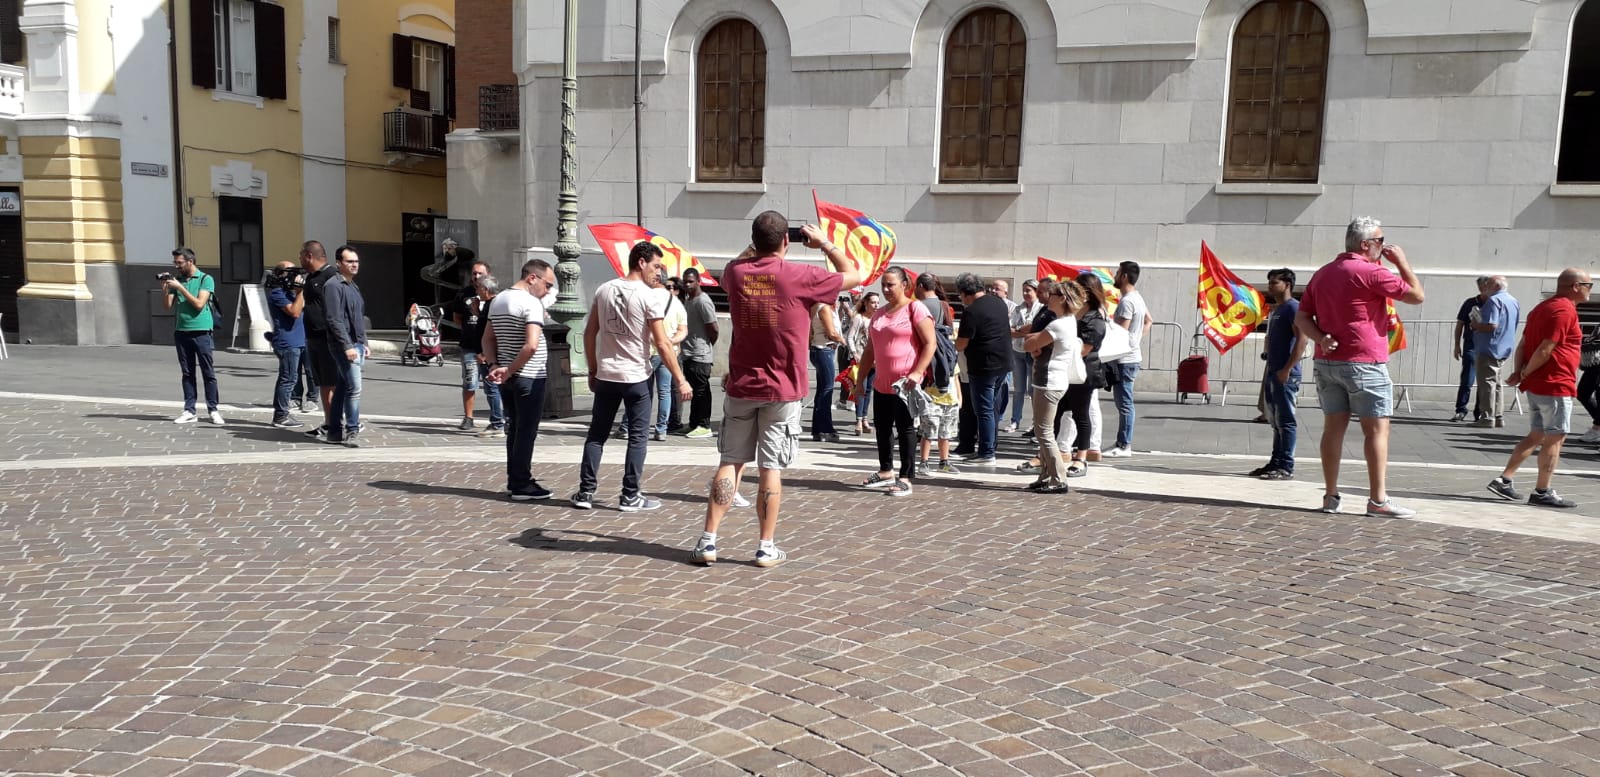 Benevento| Lavoratori Cas, la vertenza arriva ai parlamentari sanniti